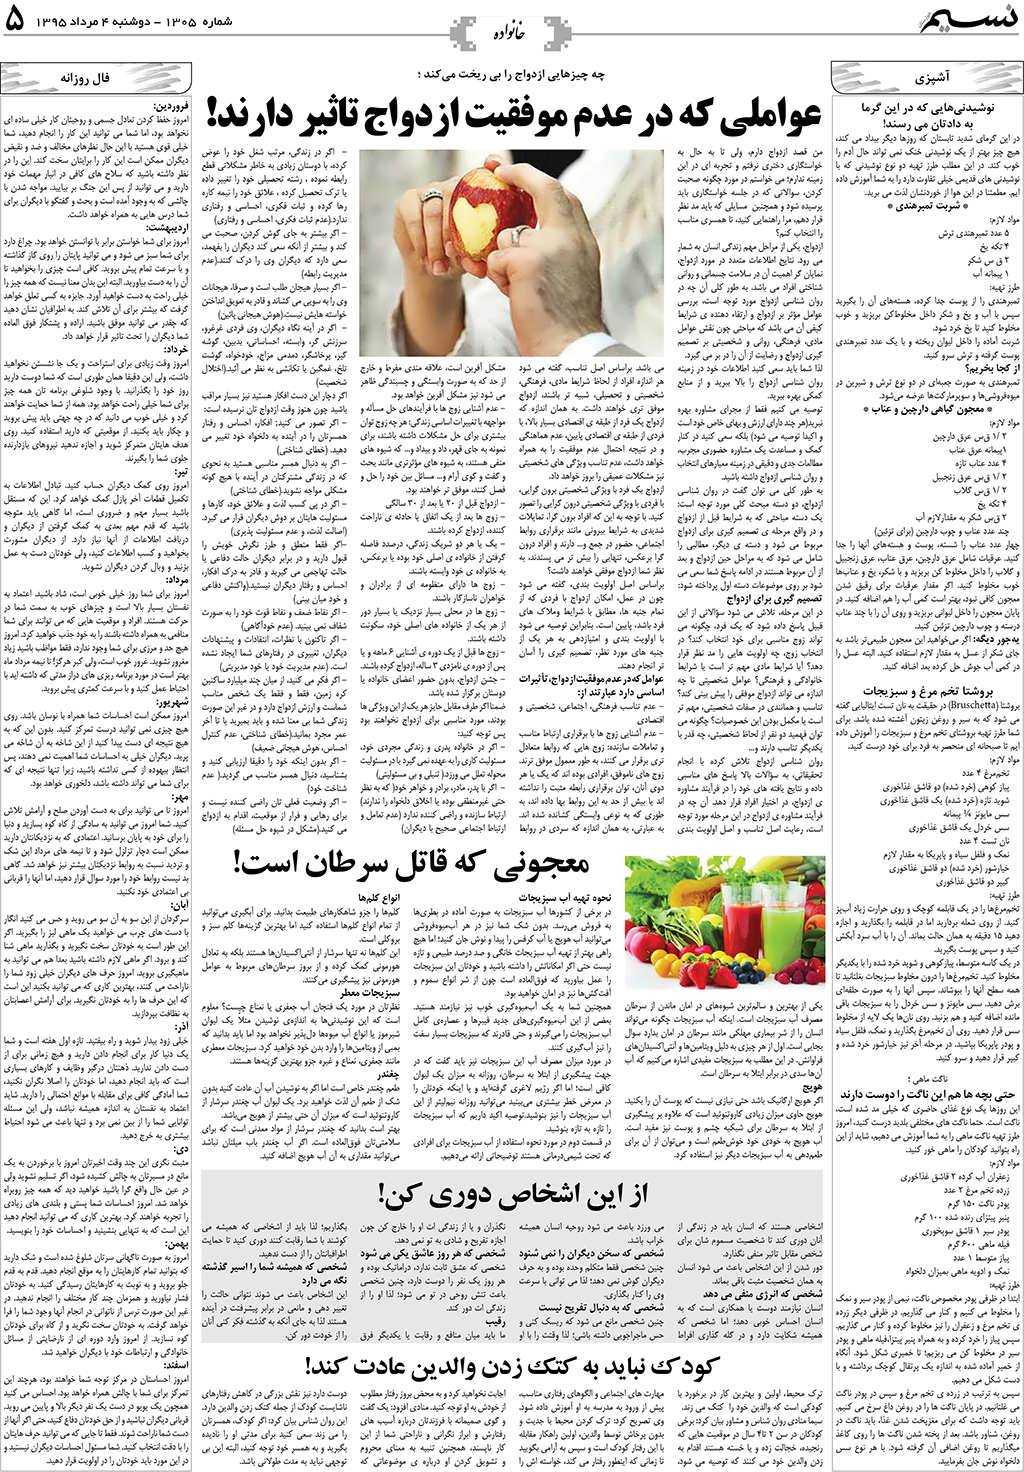 صفحه خانواده روزنامه نسیم شماره 1305